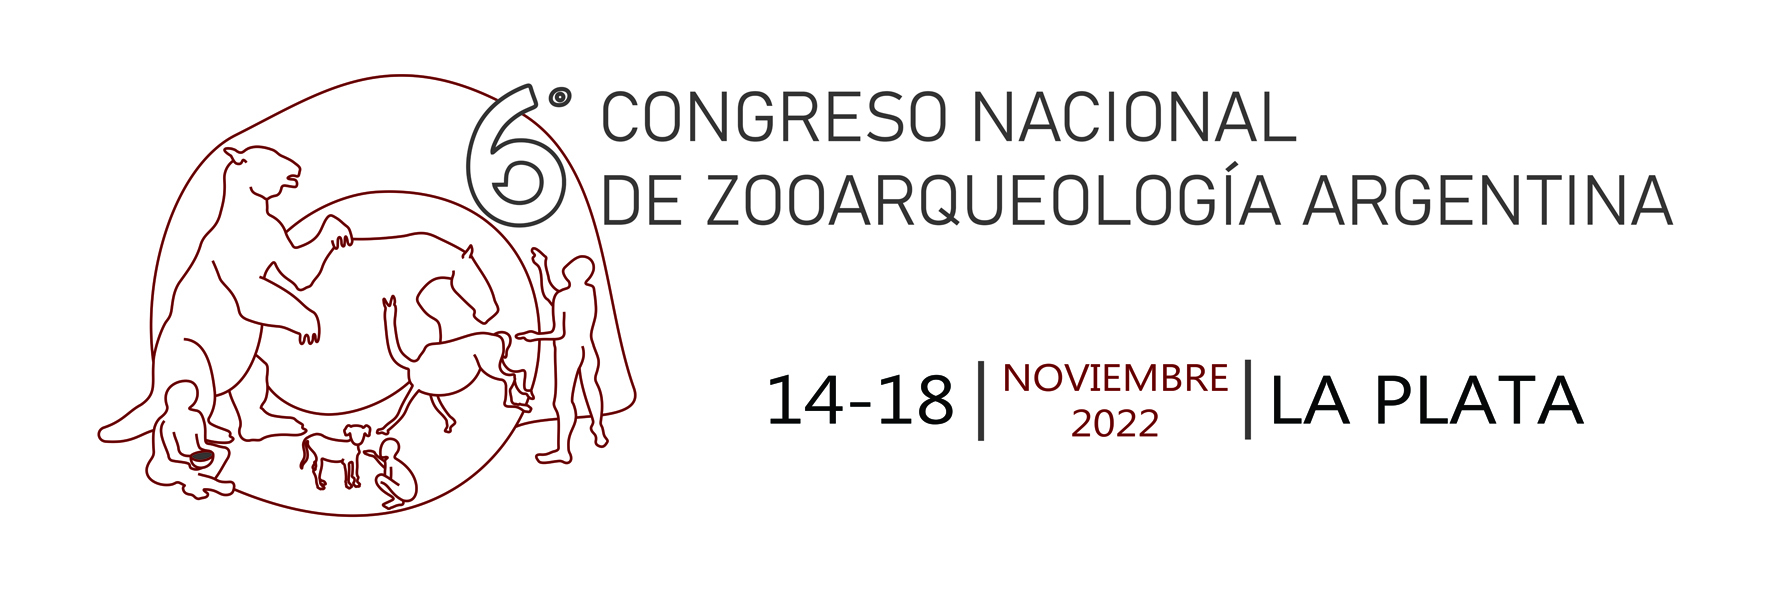 6º Congreso Nacional de Zooarqueología Argentina Logo